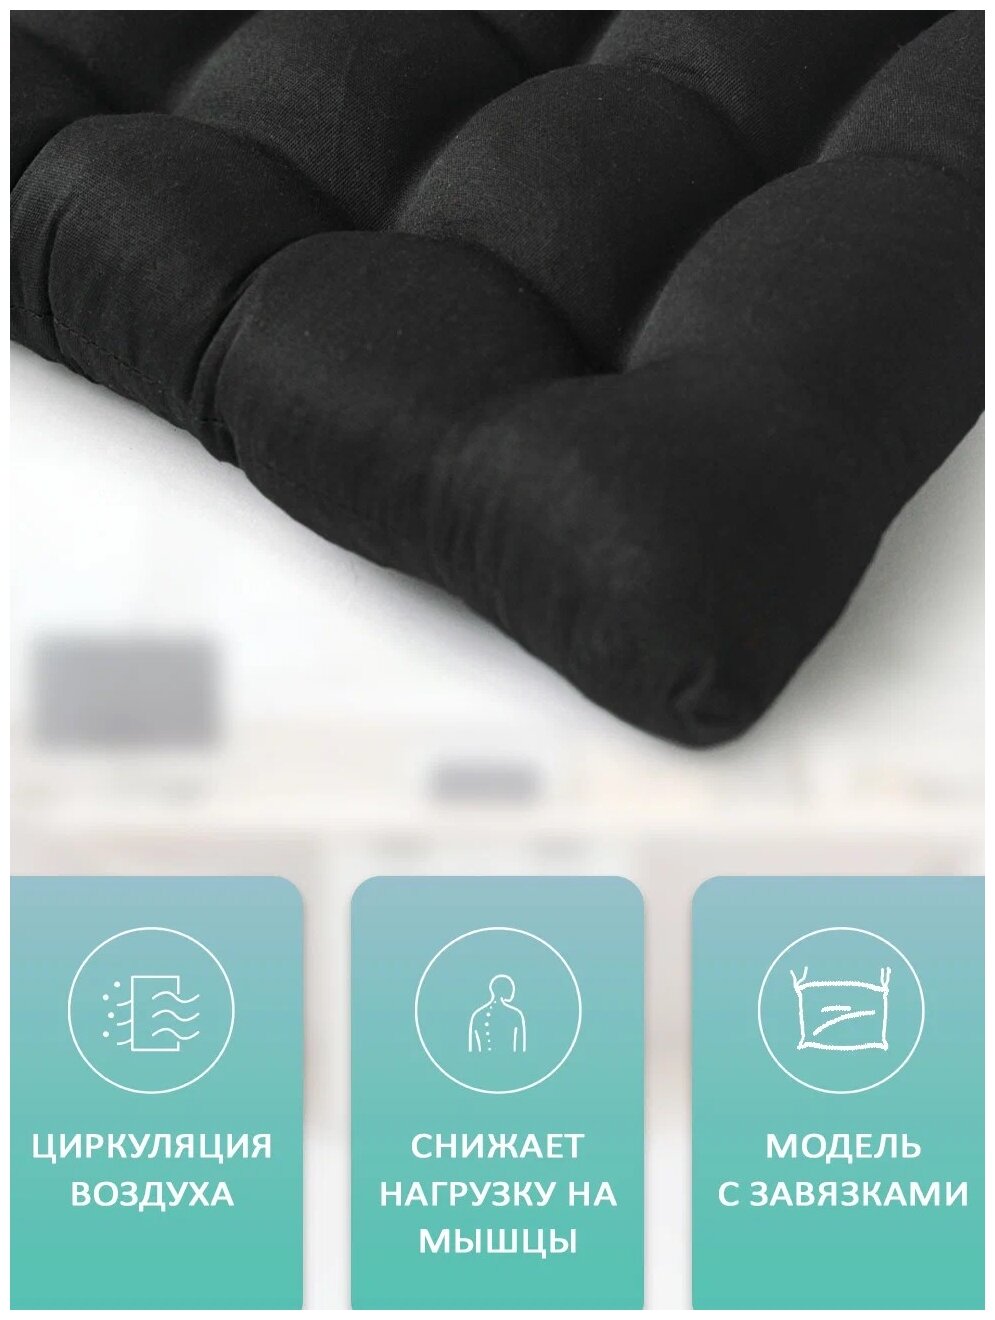 Подушка Bio-Line для сидения ортопедическая KSG на завязках — купить сегодн...